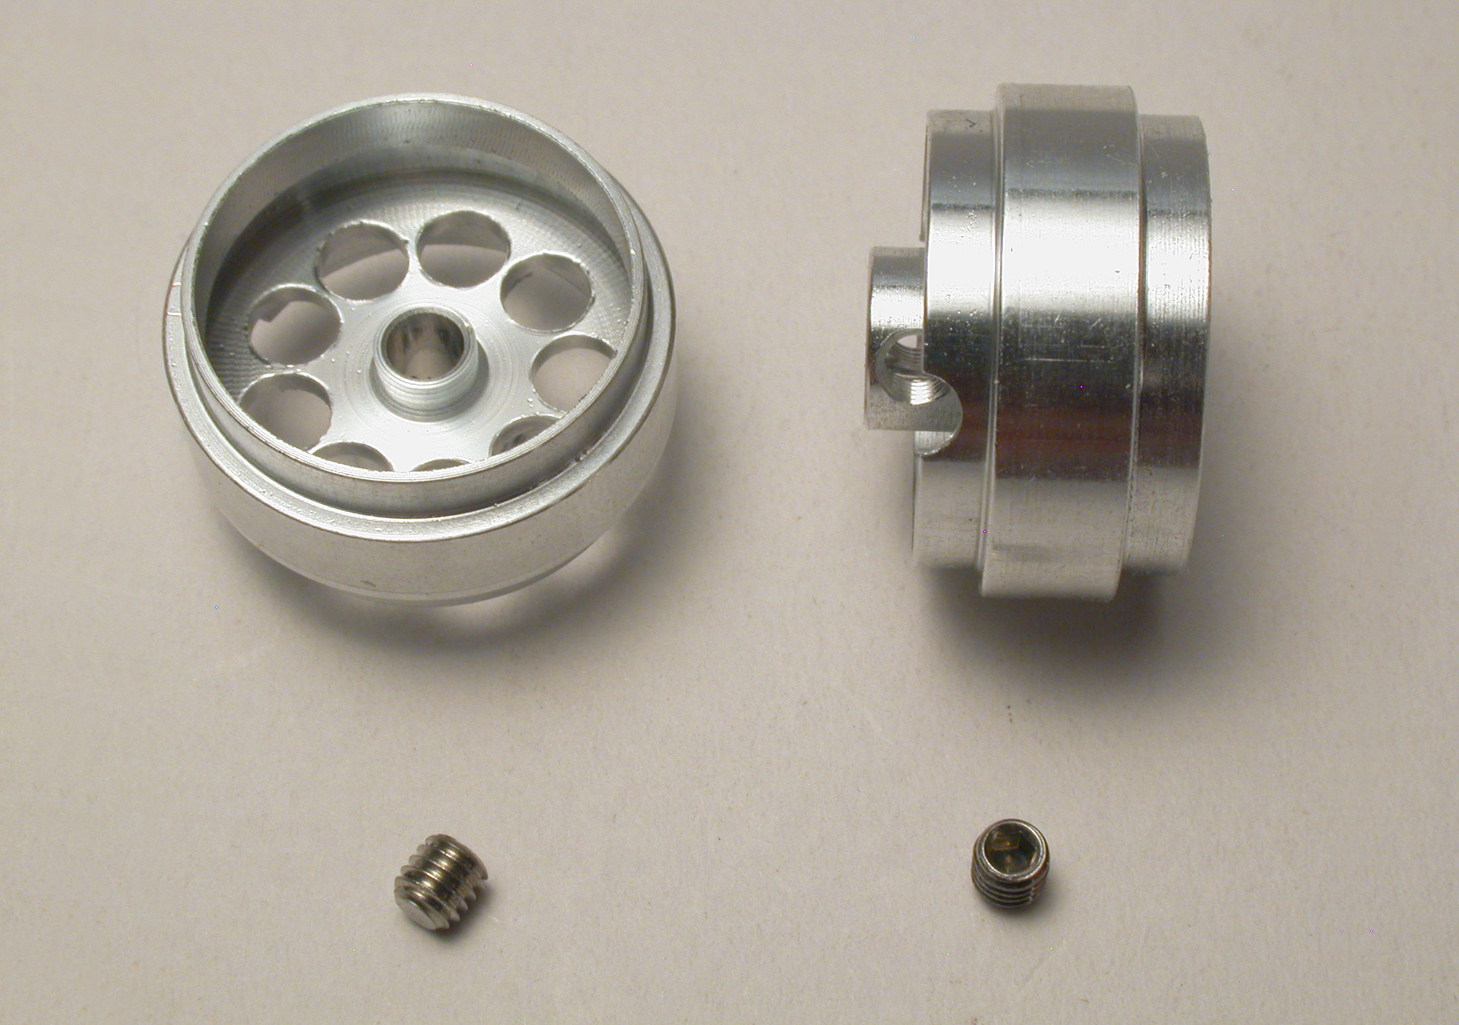 SC-4019 “Profile“ Design for 3mm. Axle. M3 screw